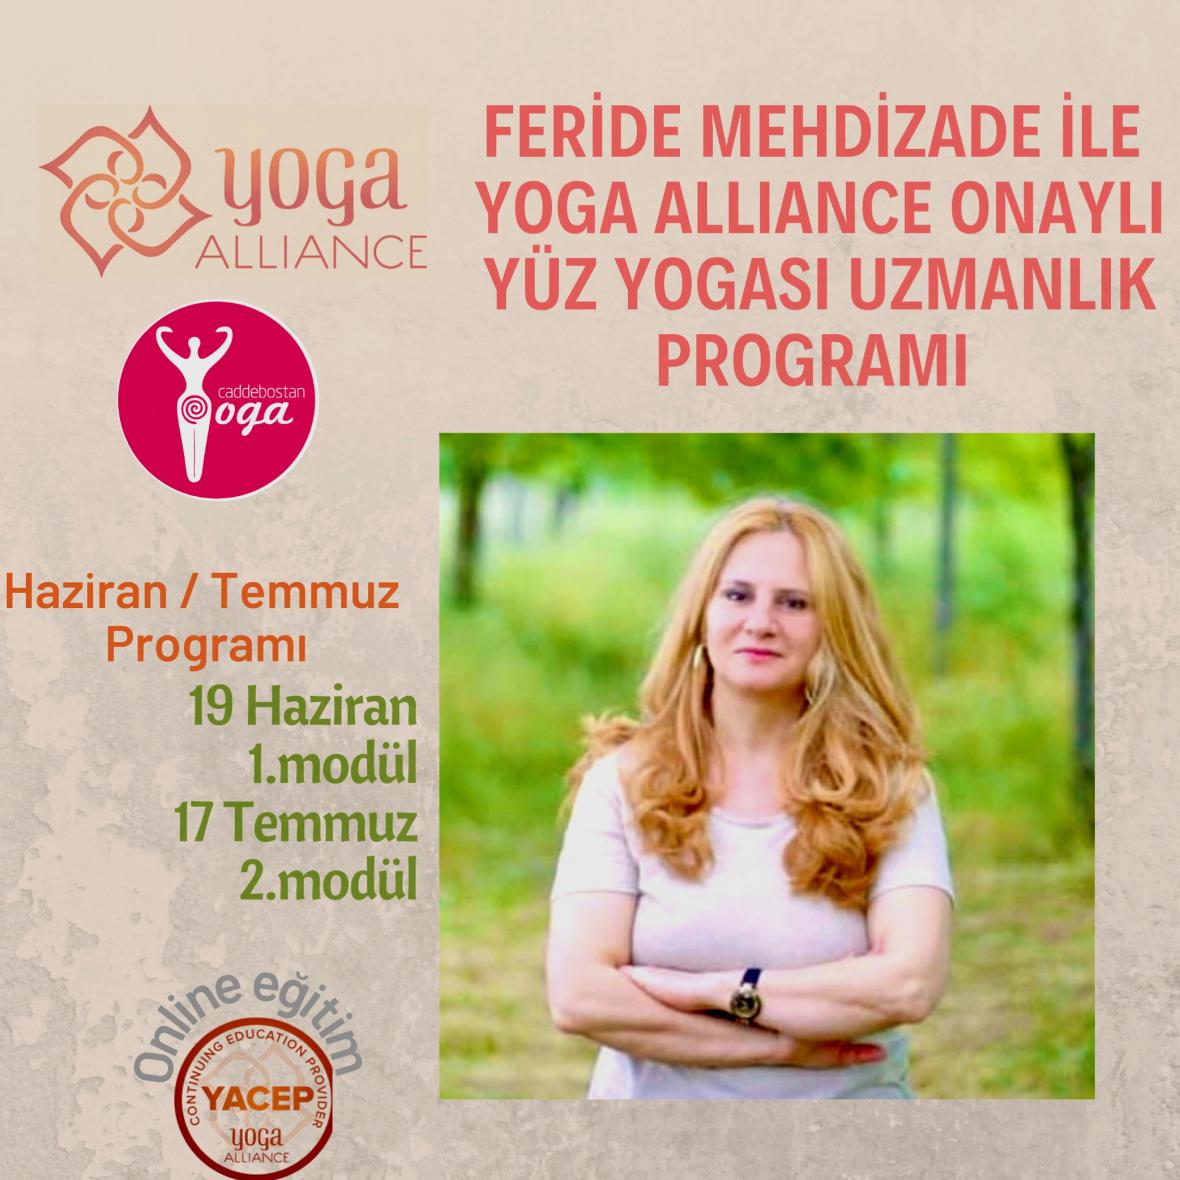 Feride Mehdizade ile Yoga Alliance Onaylı Yüz Yogası Uzmanlığı Sertifika Programı